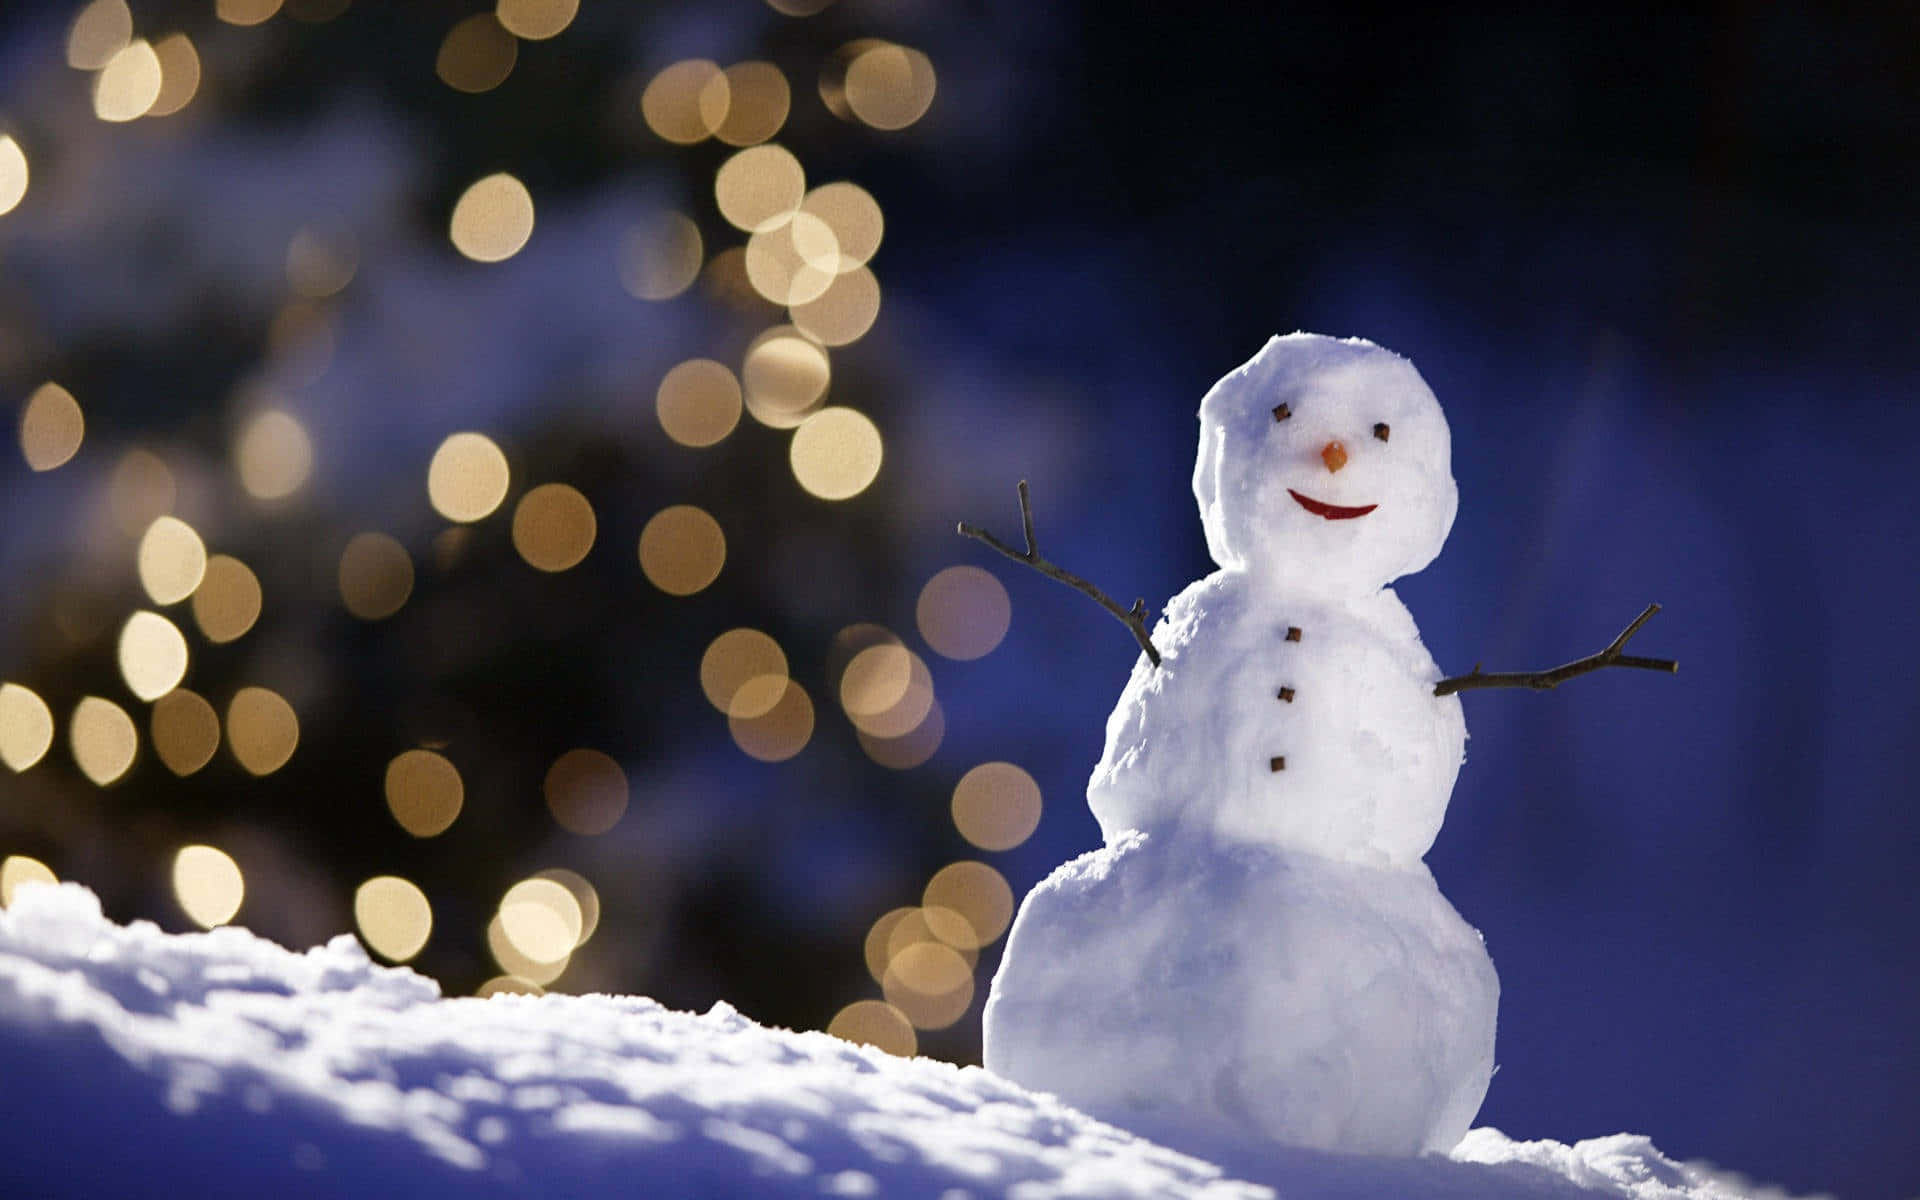 Twinkling Winter Night Snowman.jpg Wallpaper